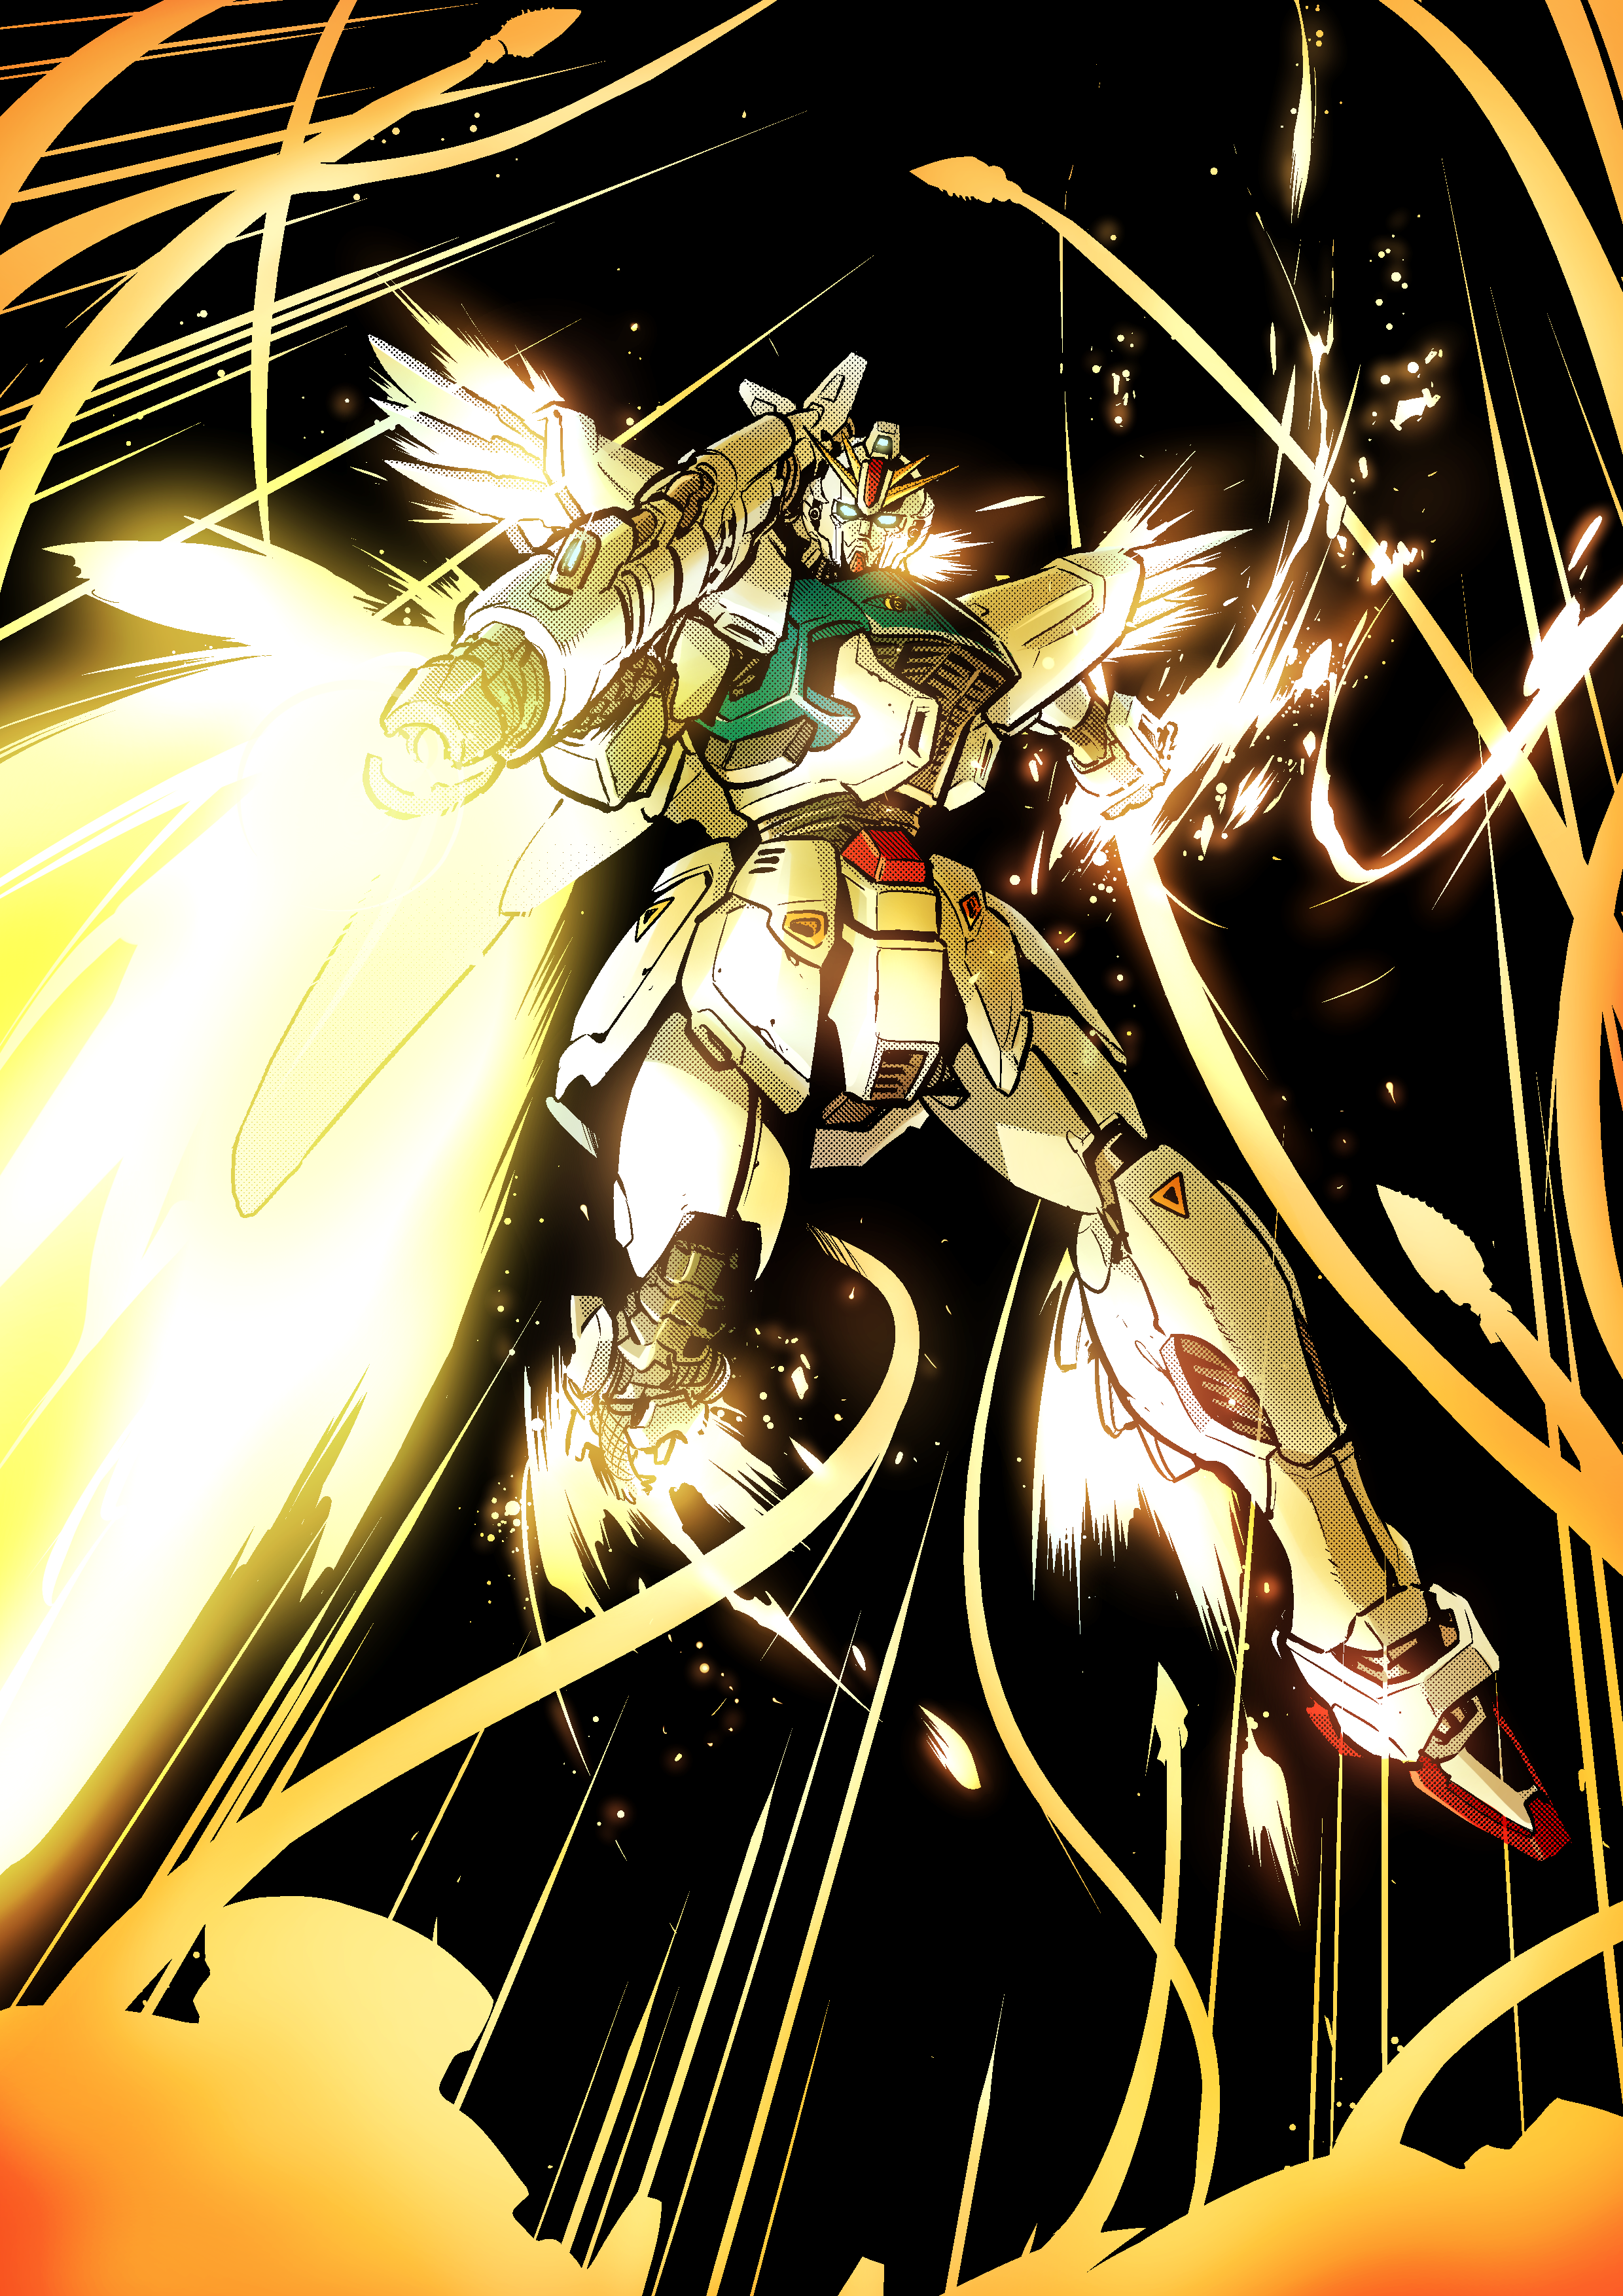 Anime Mech Gundam Super Robot Wars Mobile Suit Gundam F91 Gundam F91 Artwork Digital Art Fan Art 2480x3508